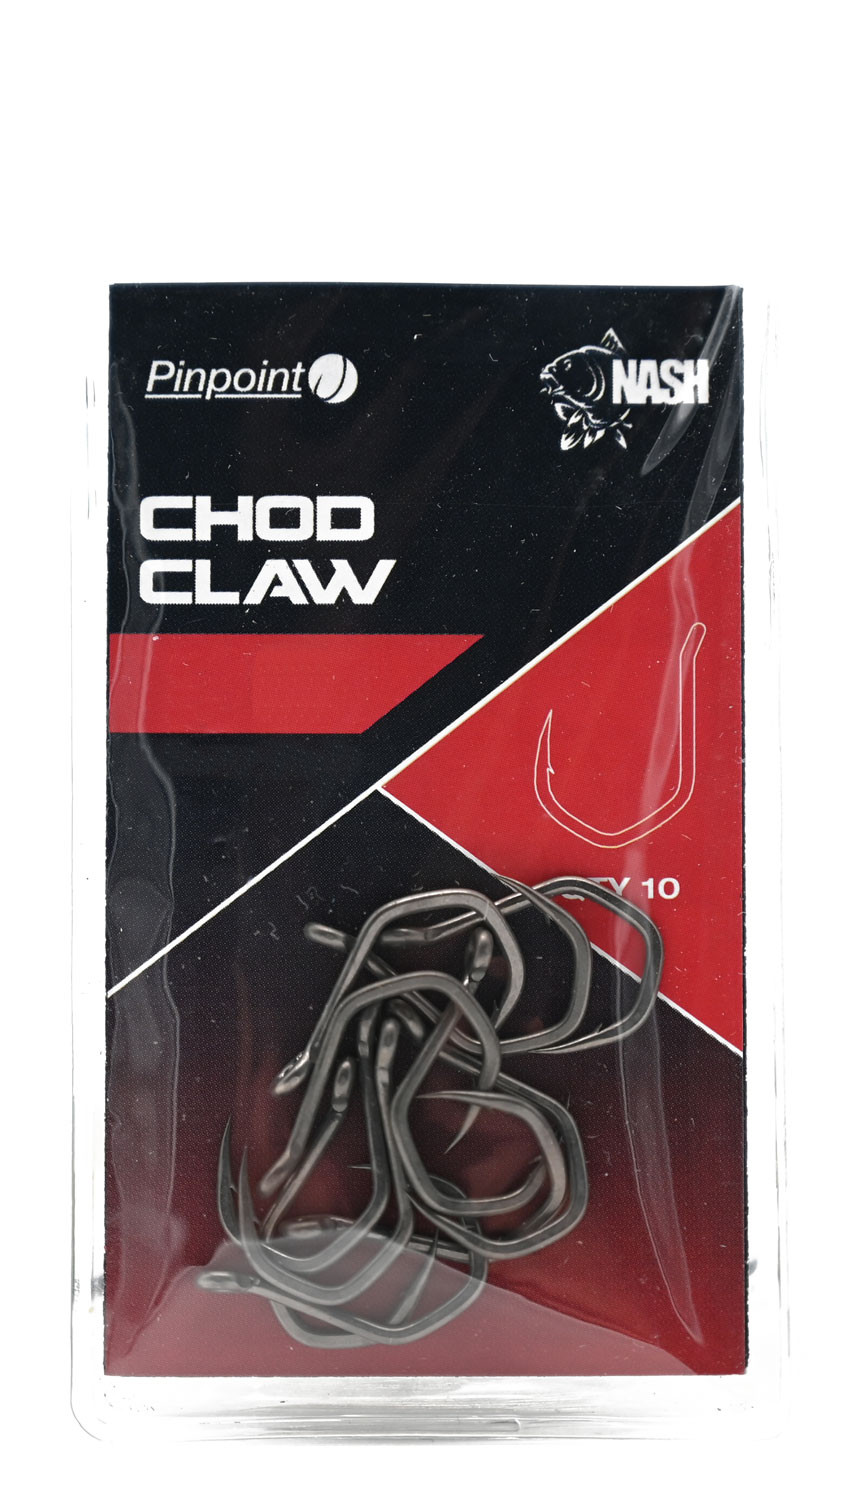 Nash Chod Claw